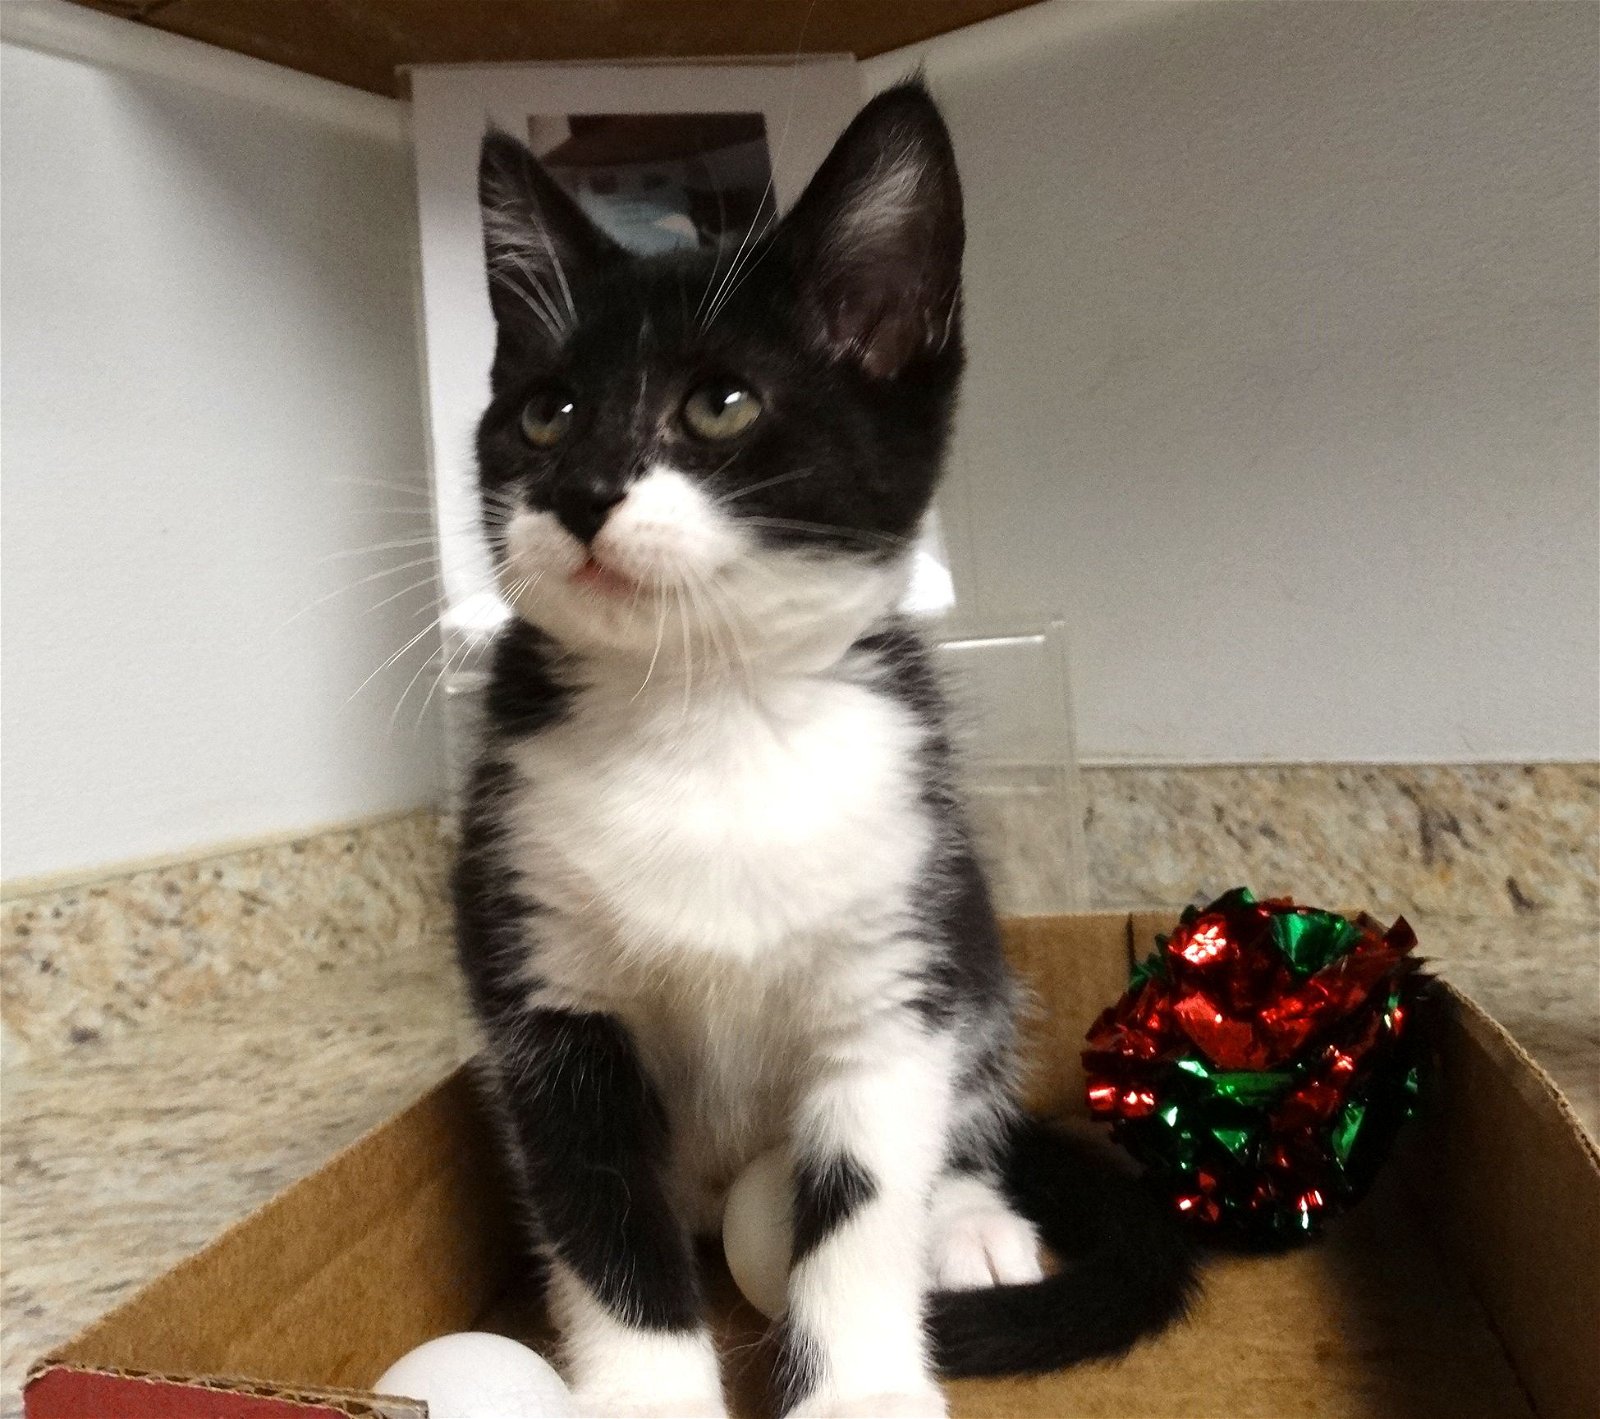 adoptable Cat in Colonia, NJ named Sandra